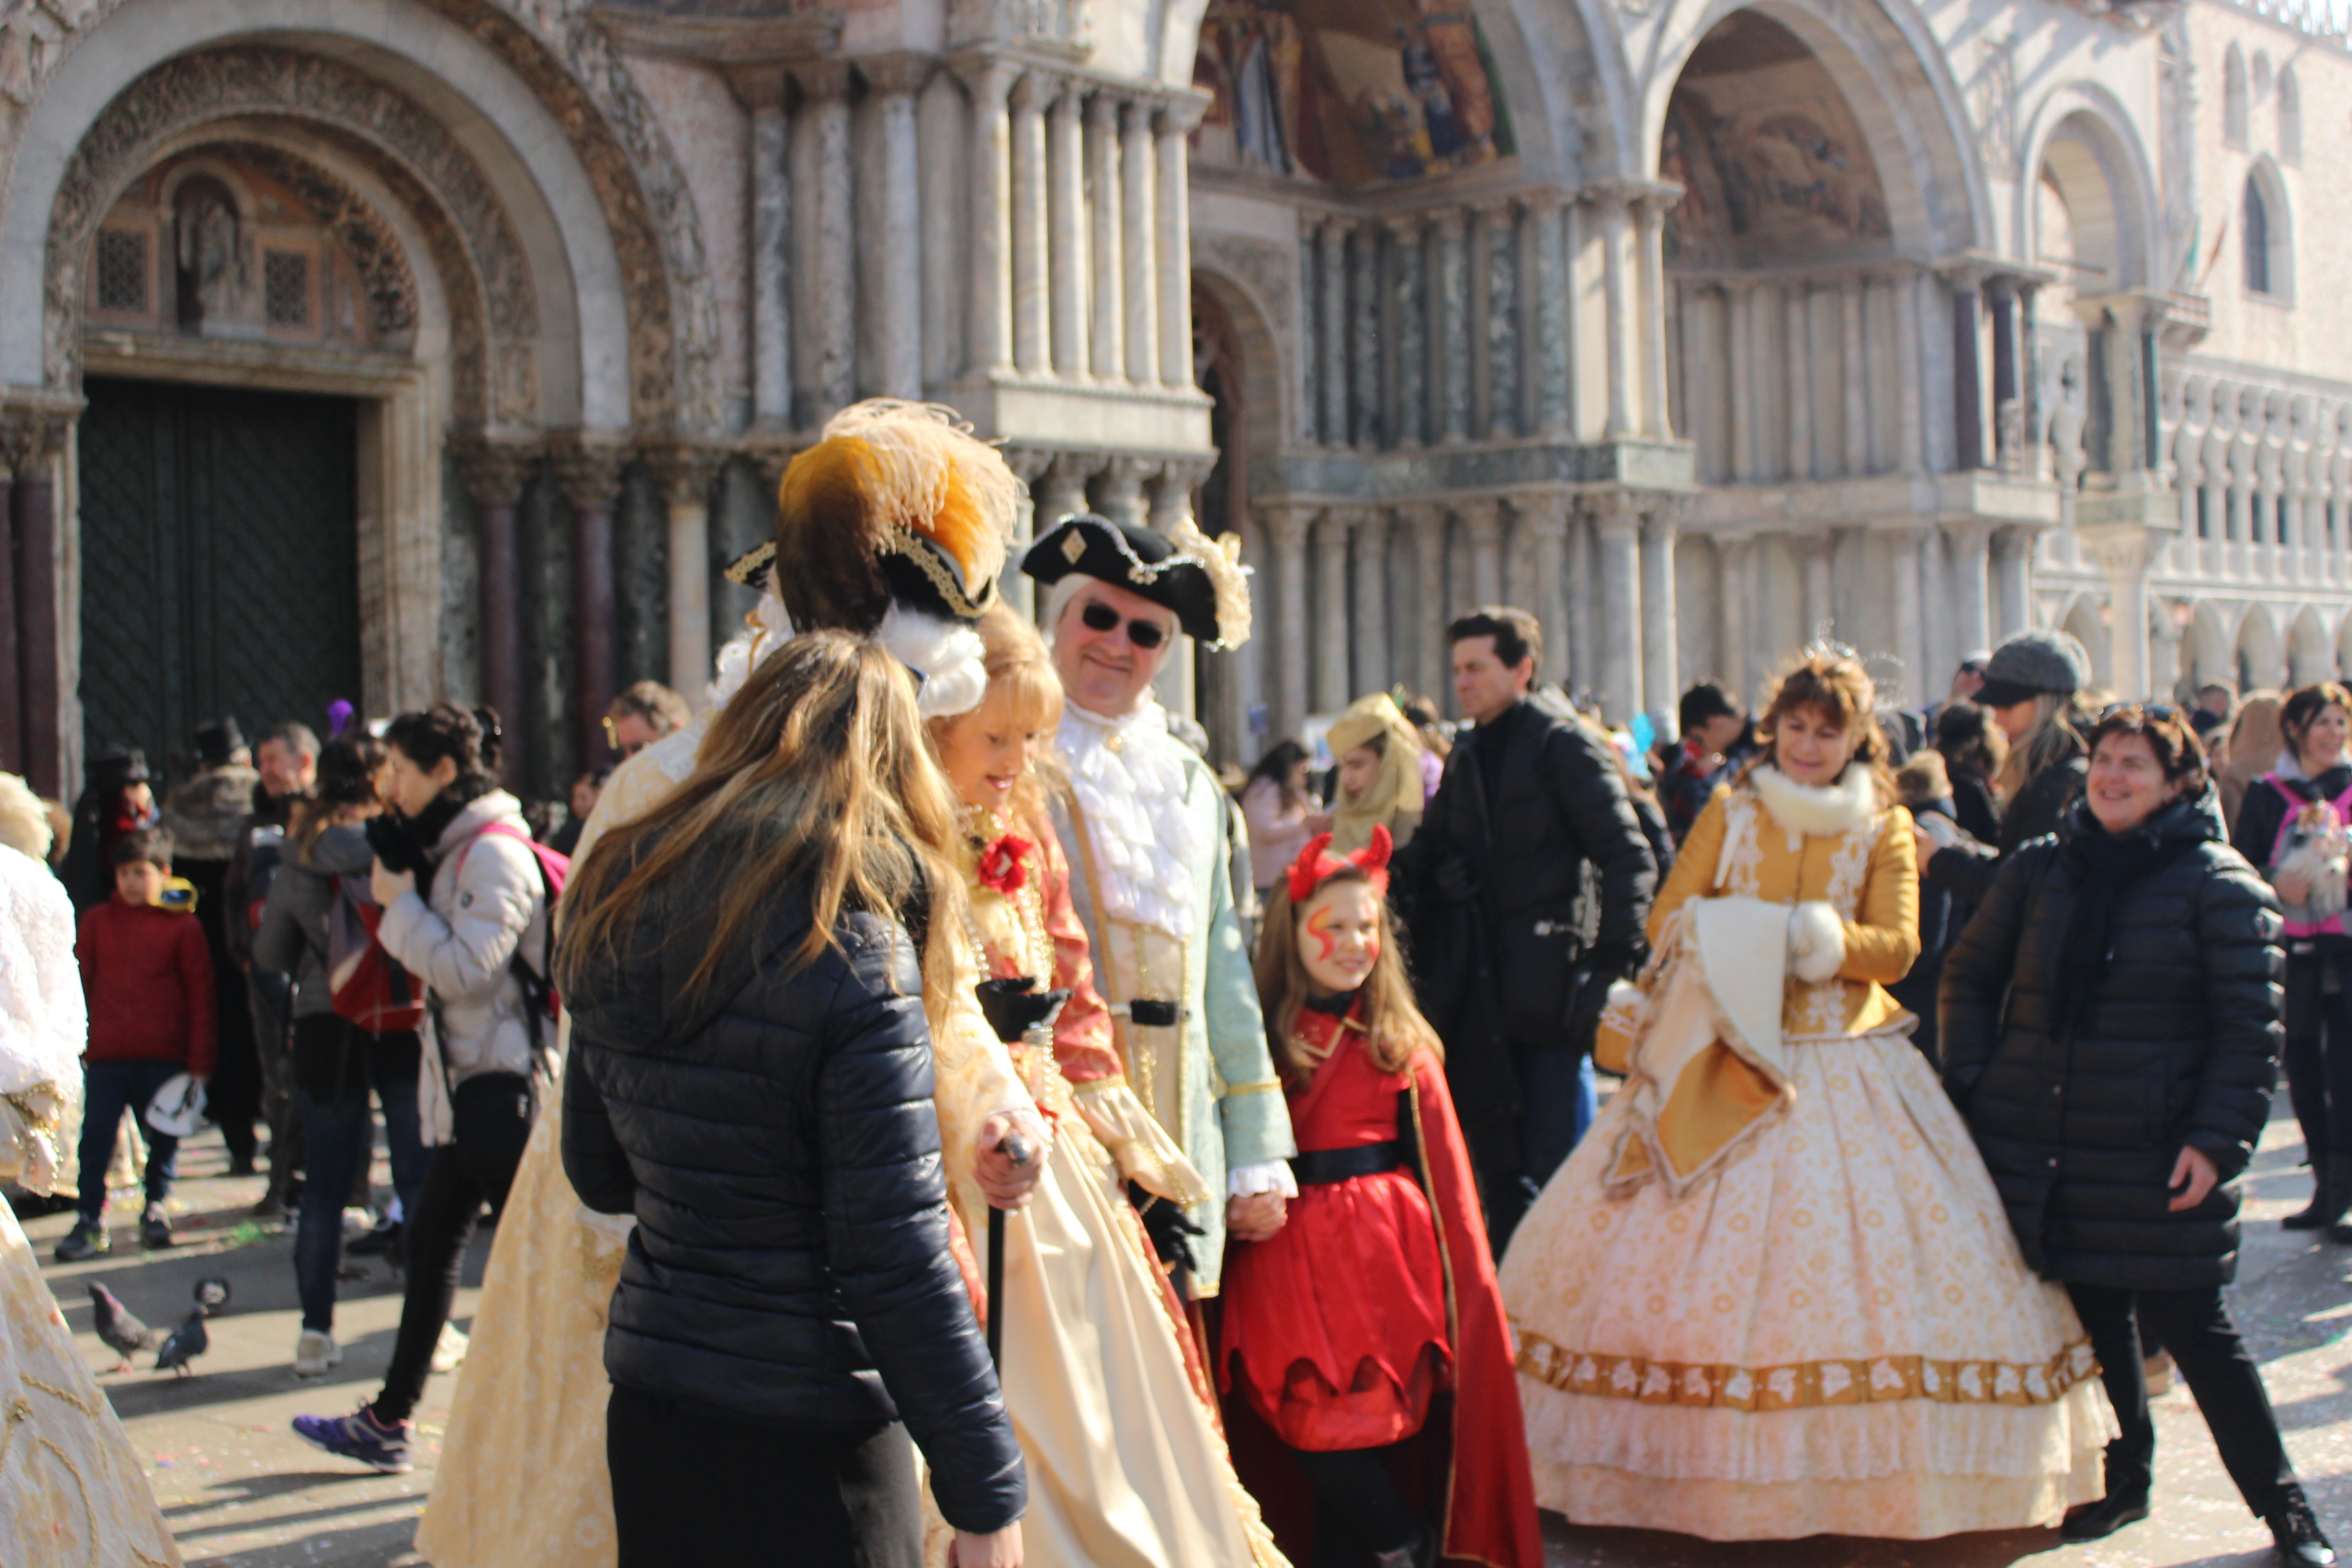 Carnevale di Venezia maschere